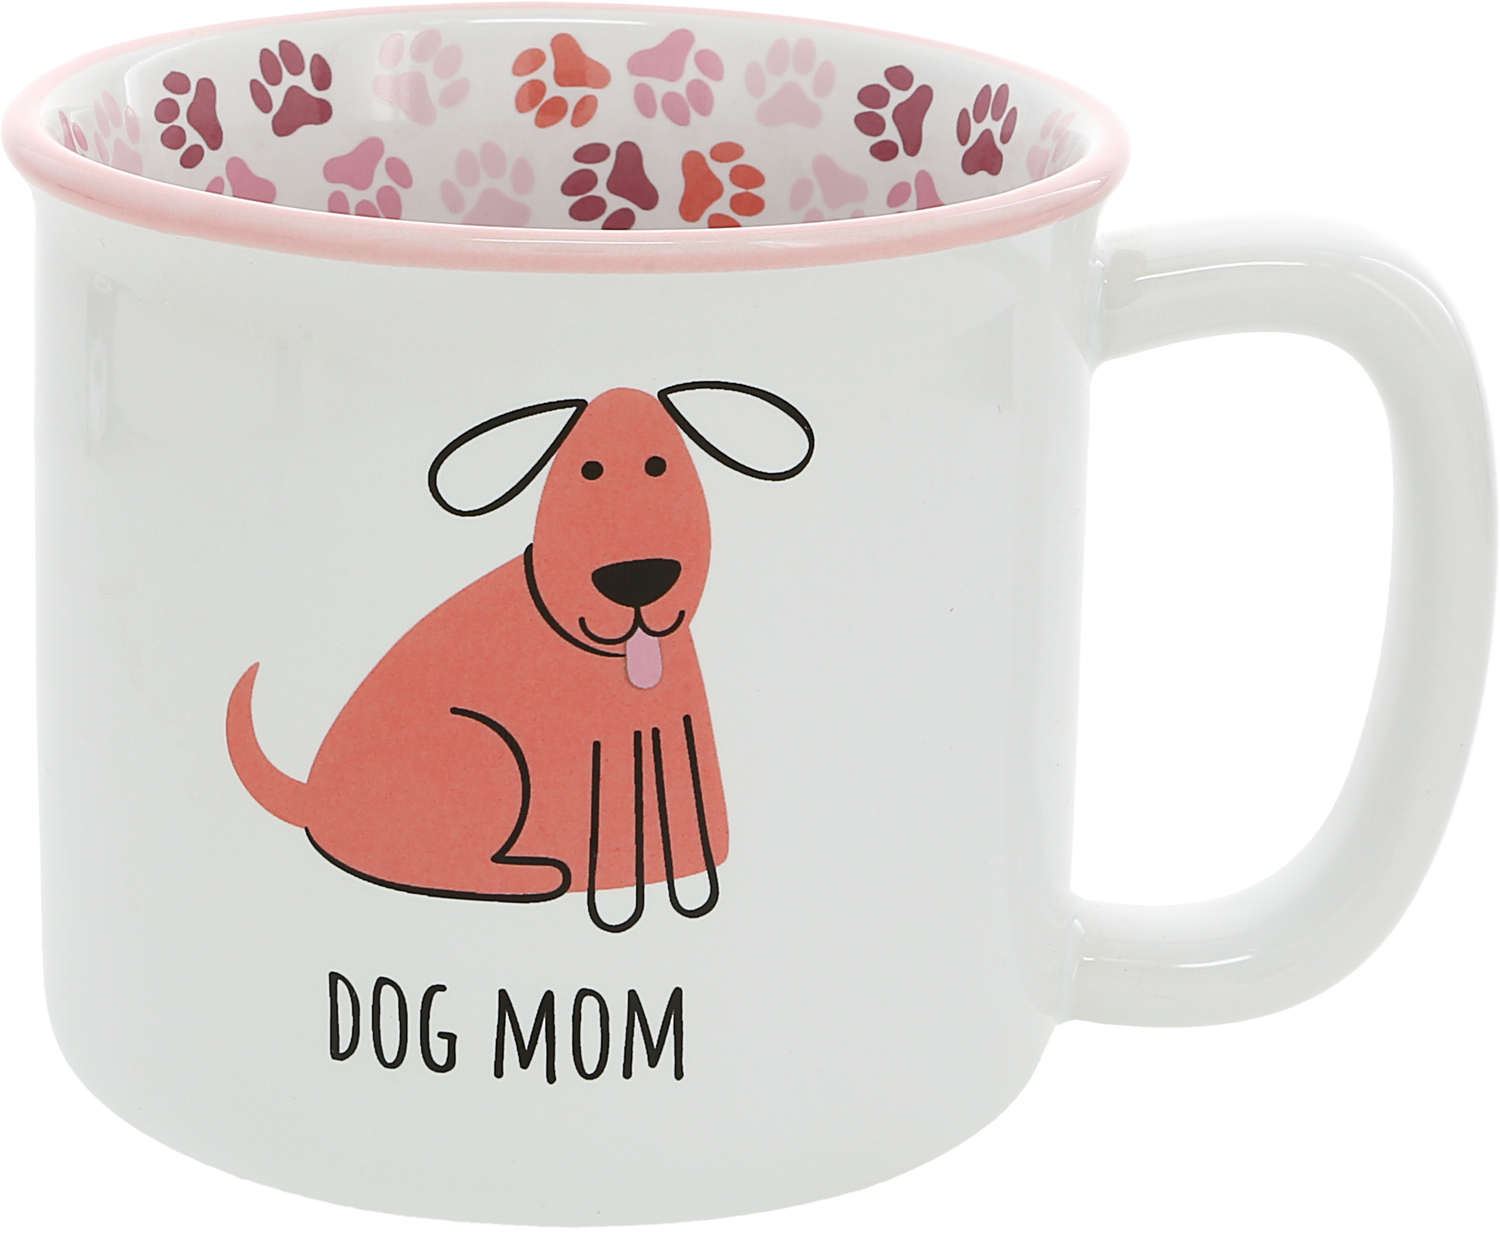 Dog Mom by Pawsome Pals - Dog Mom - 18 oz Mug